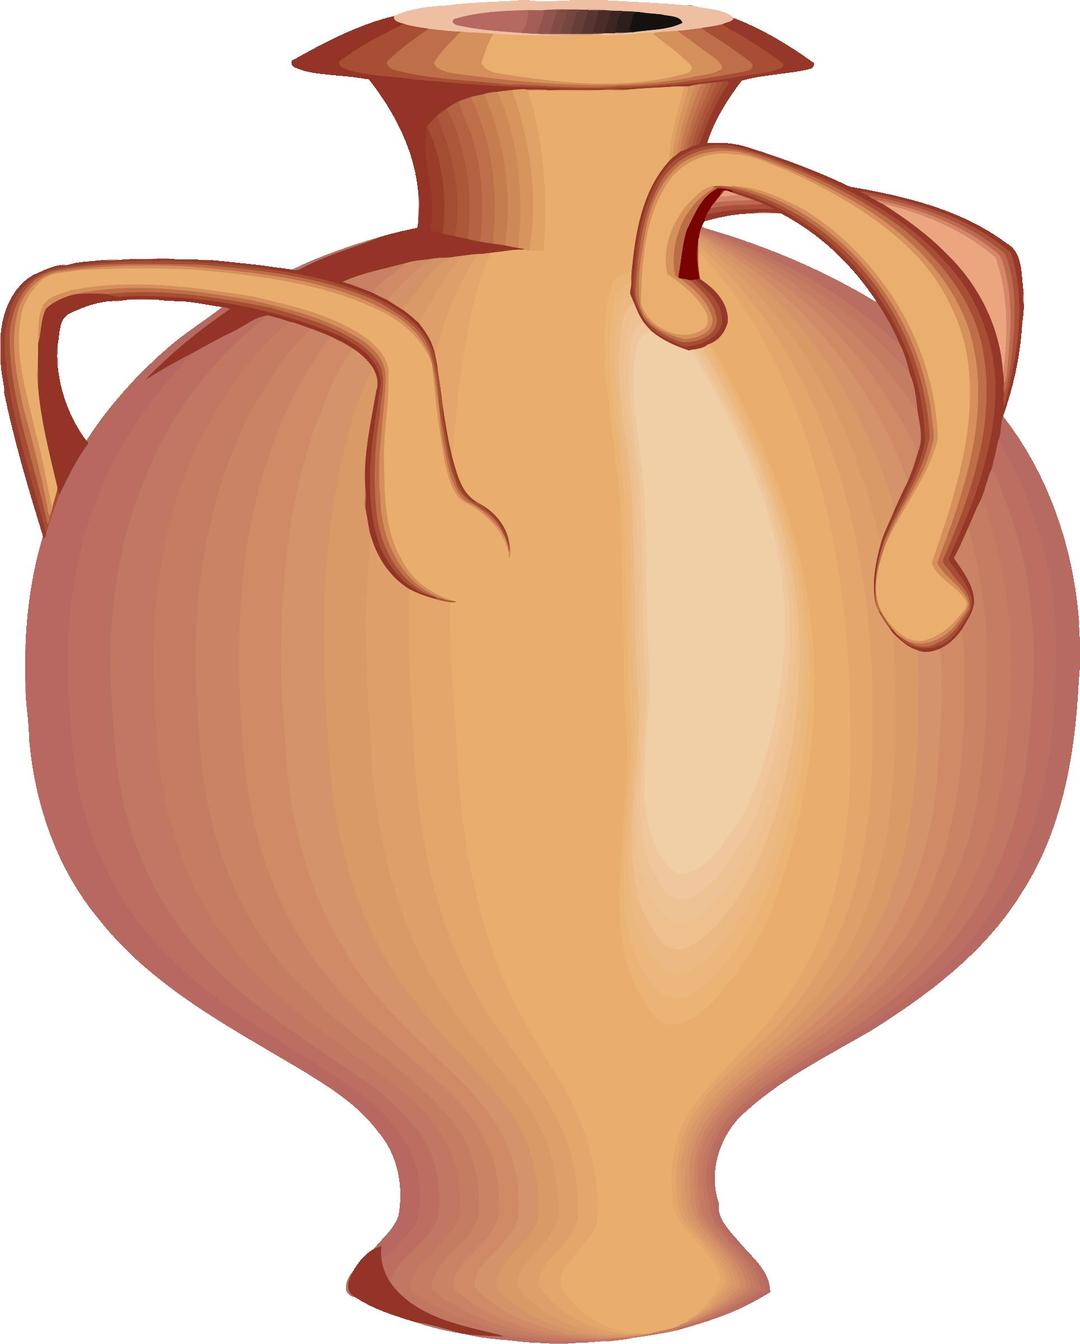 Vase clipart png transparent